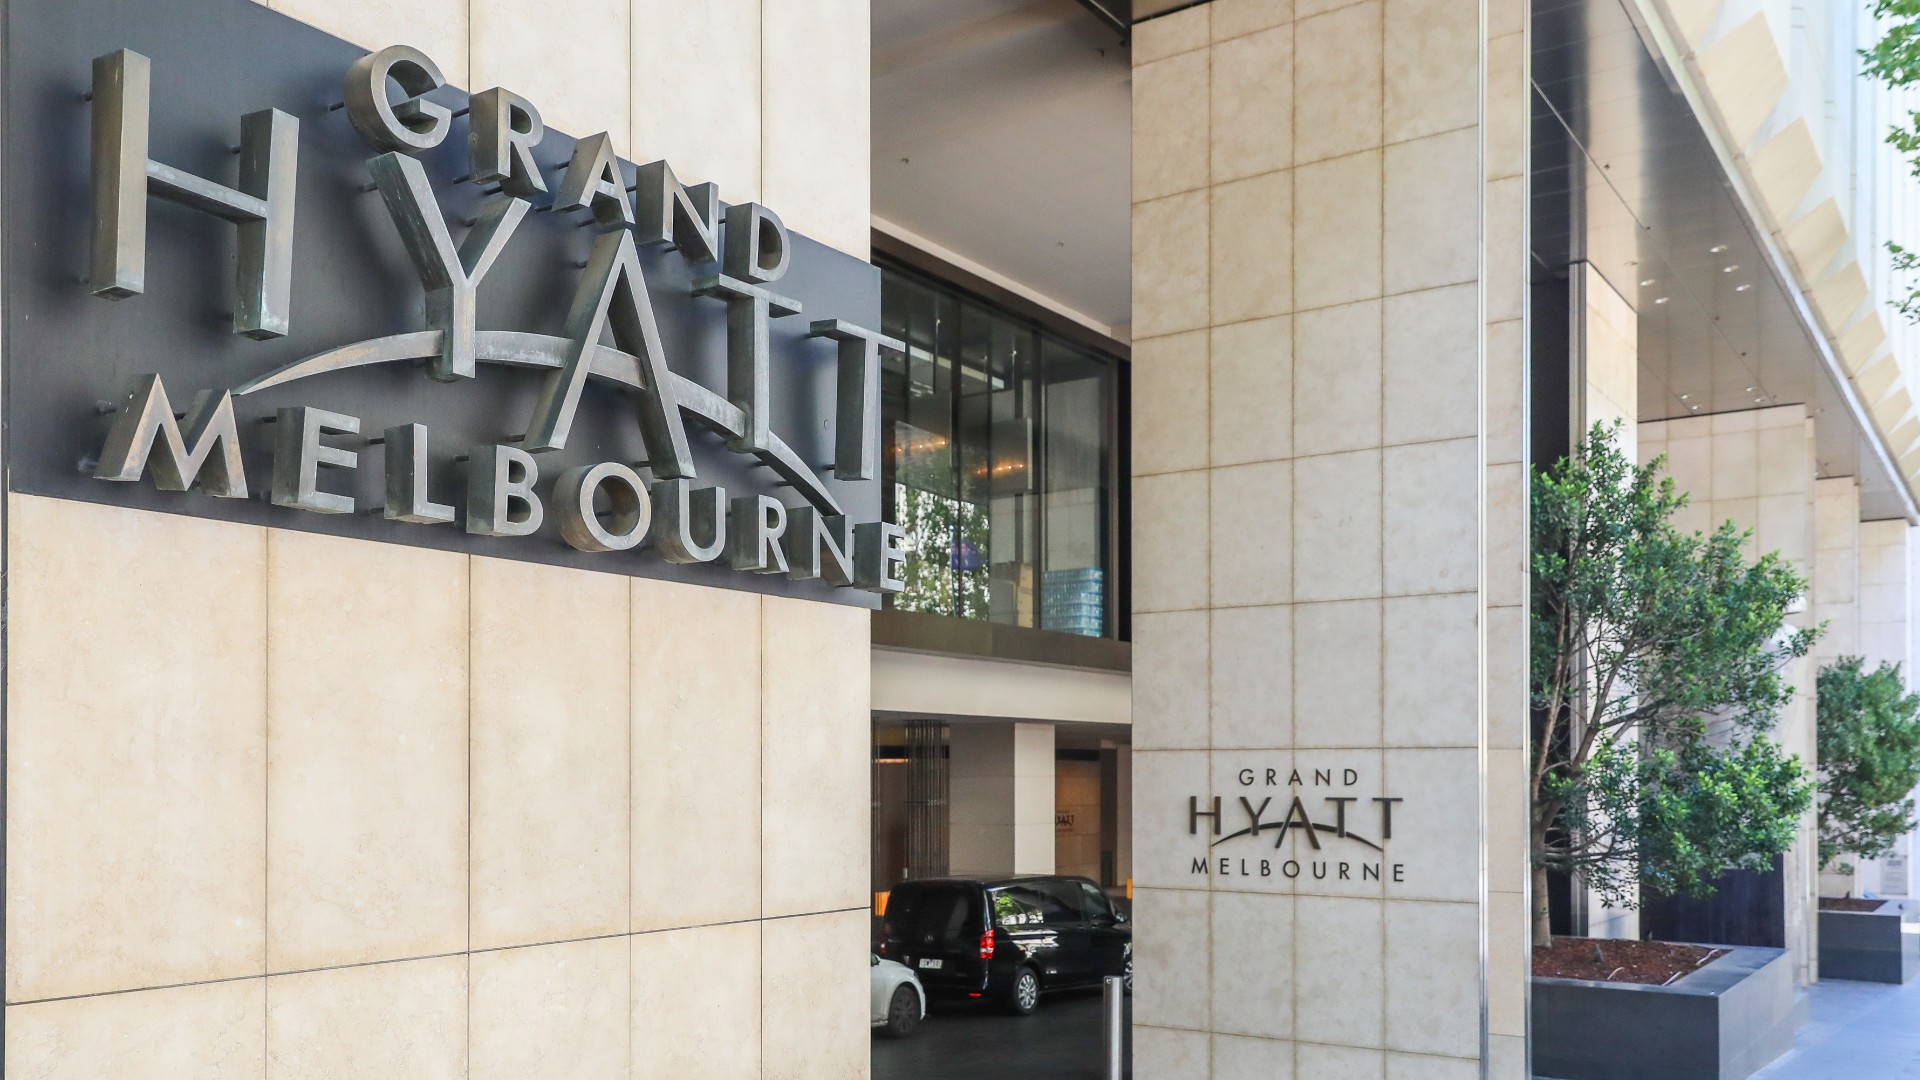 Grand Hyatt hotel, Melbourne